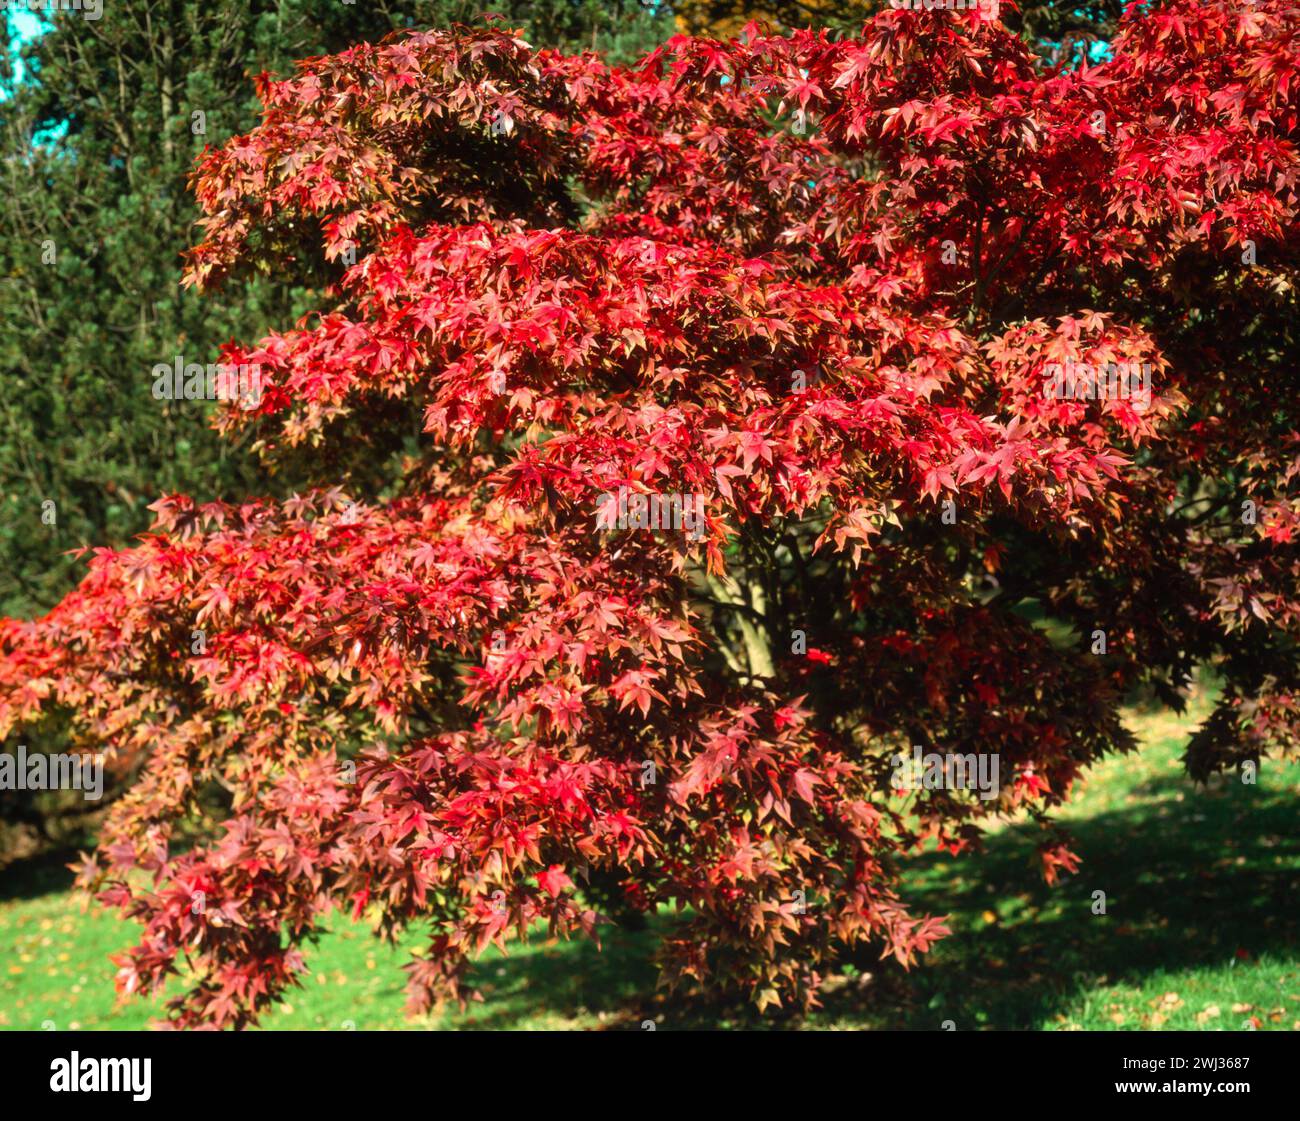 Satte rote Blätter / Laub von Acer Palmatum 'Osakazuki' (auch bekannt als Acer palmatum 'Taihai') Japanischer Ahornbaum im Herbst, Batsford Arboretum, England, Großbritannien Stockfoto